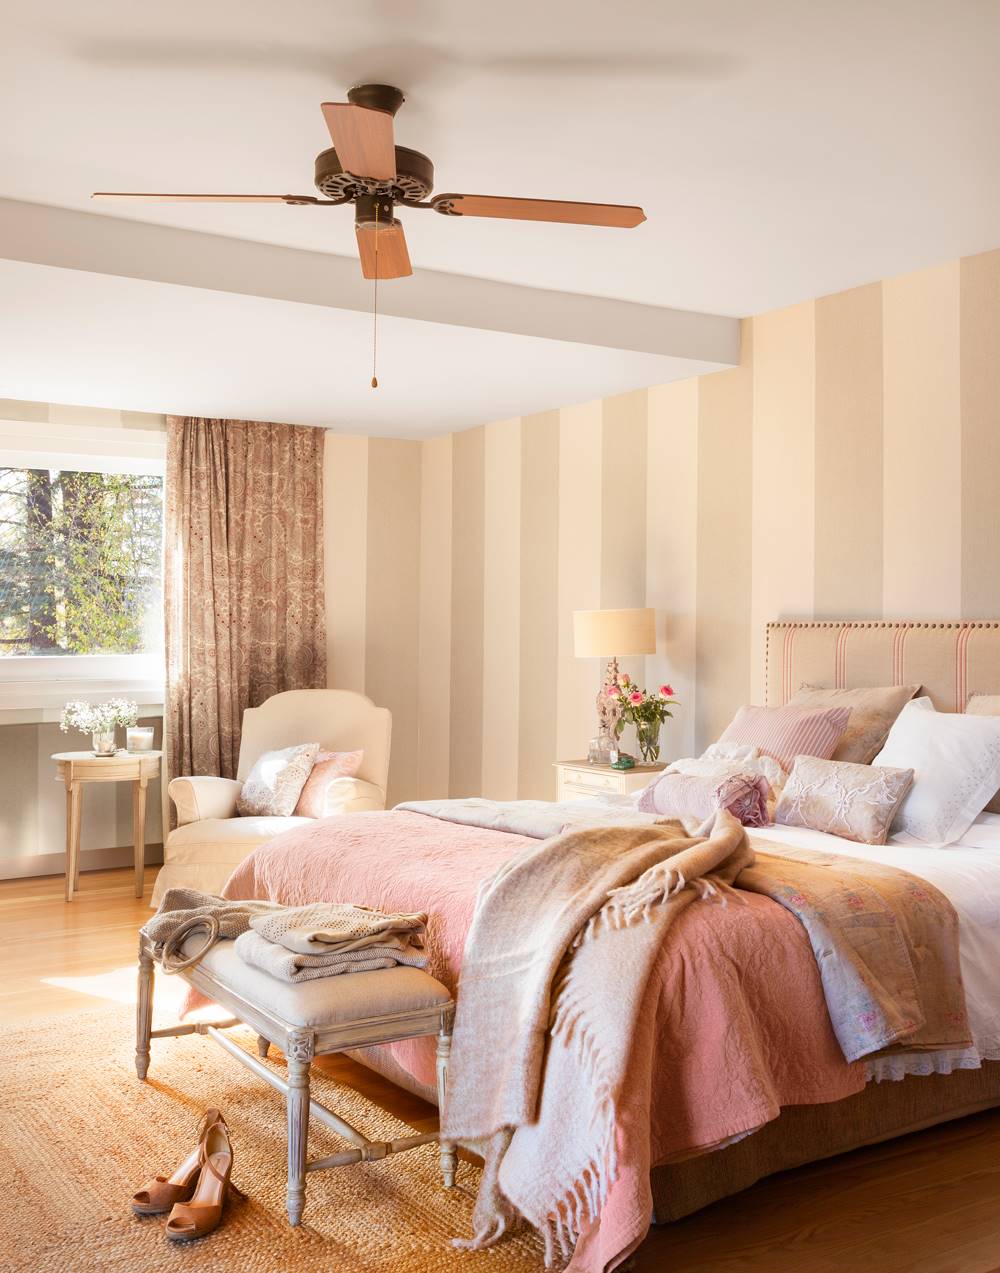 Dormitorio clásico romántico con papel pintado a rayas, cama con cabecero tapizado y banco afrancesado a los pies de la cama 00421022